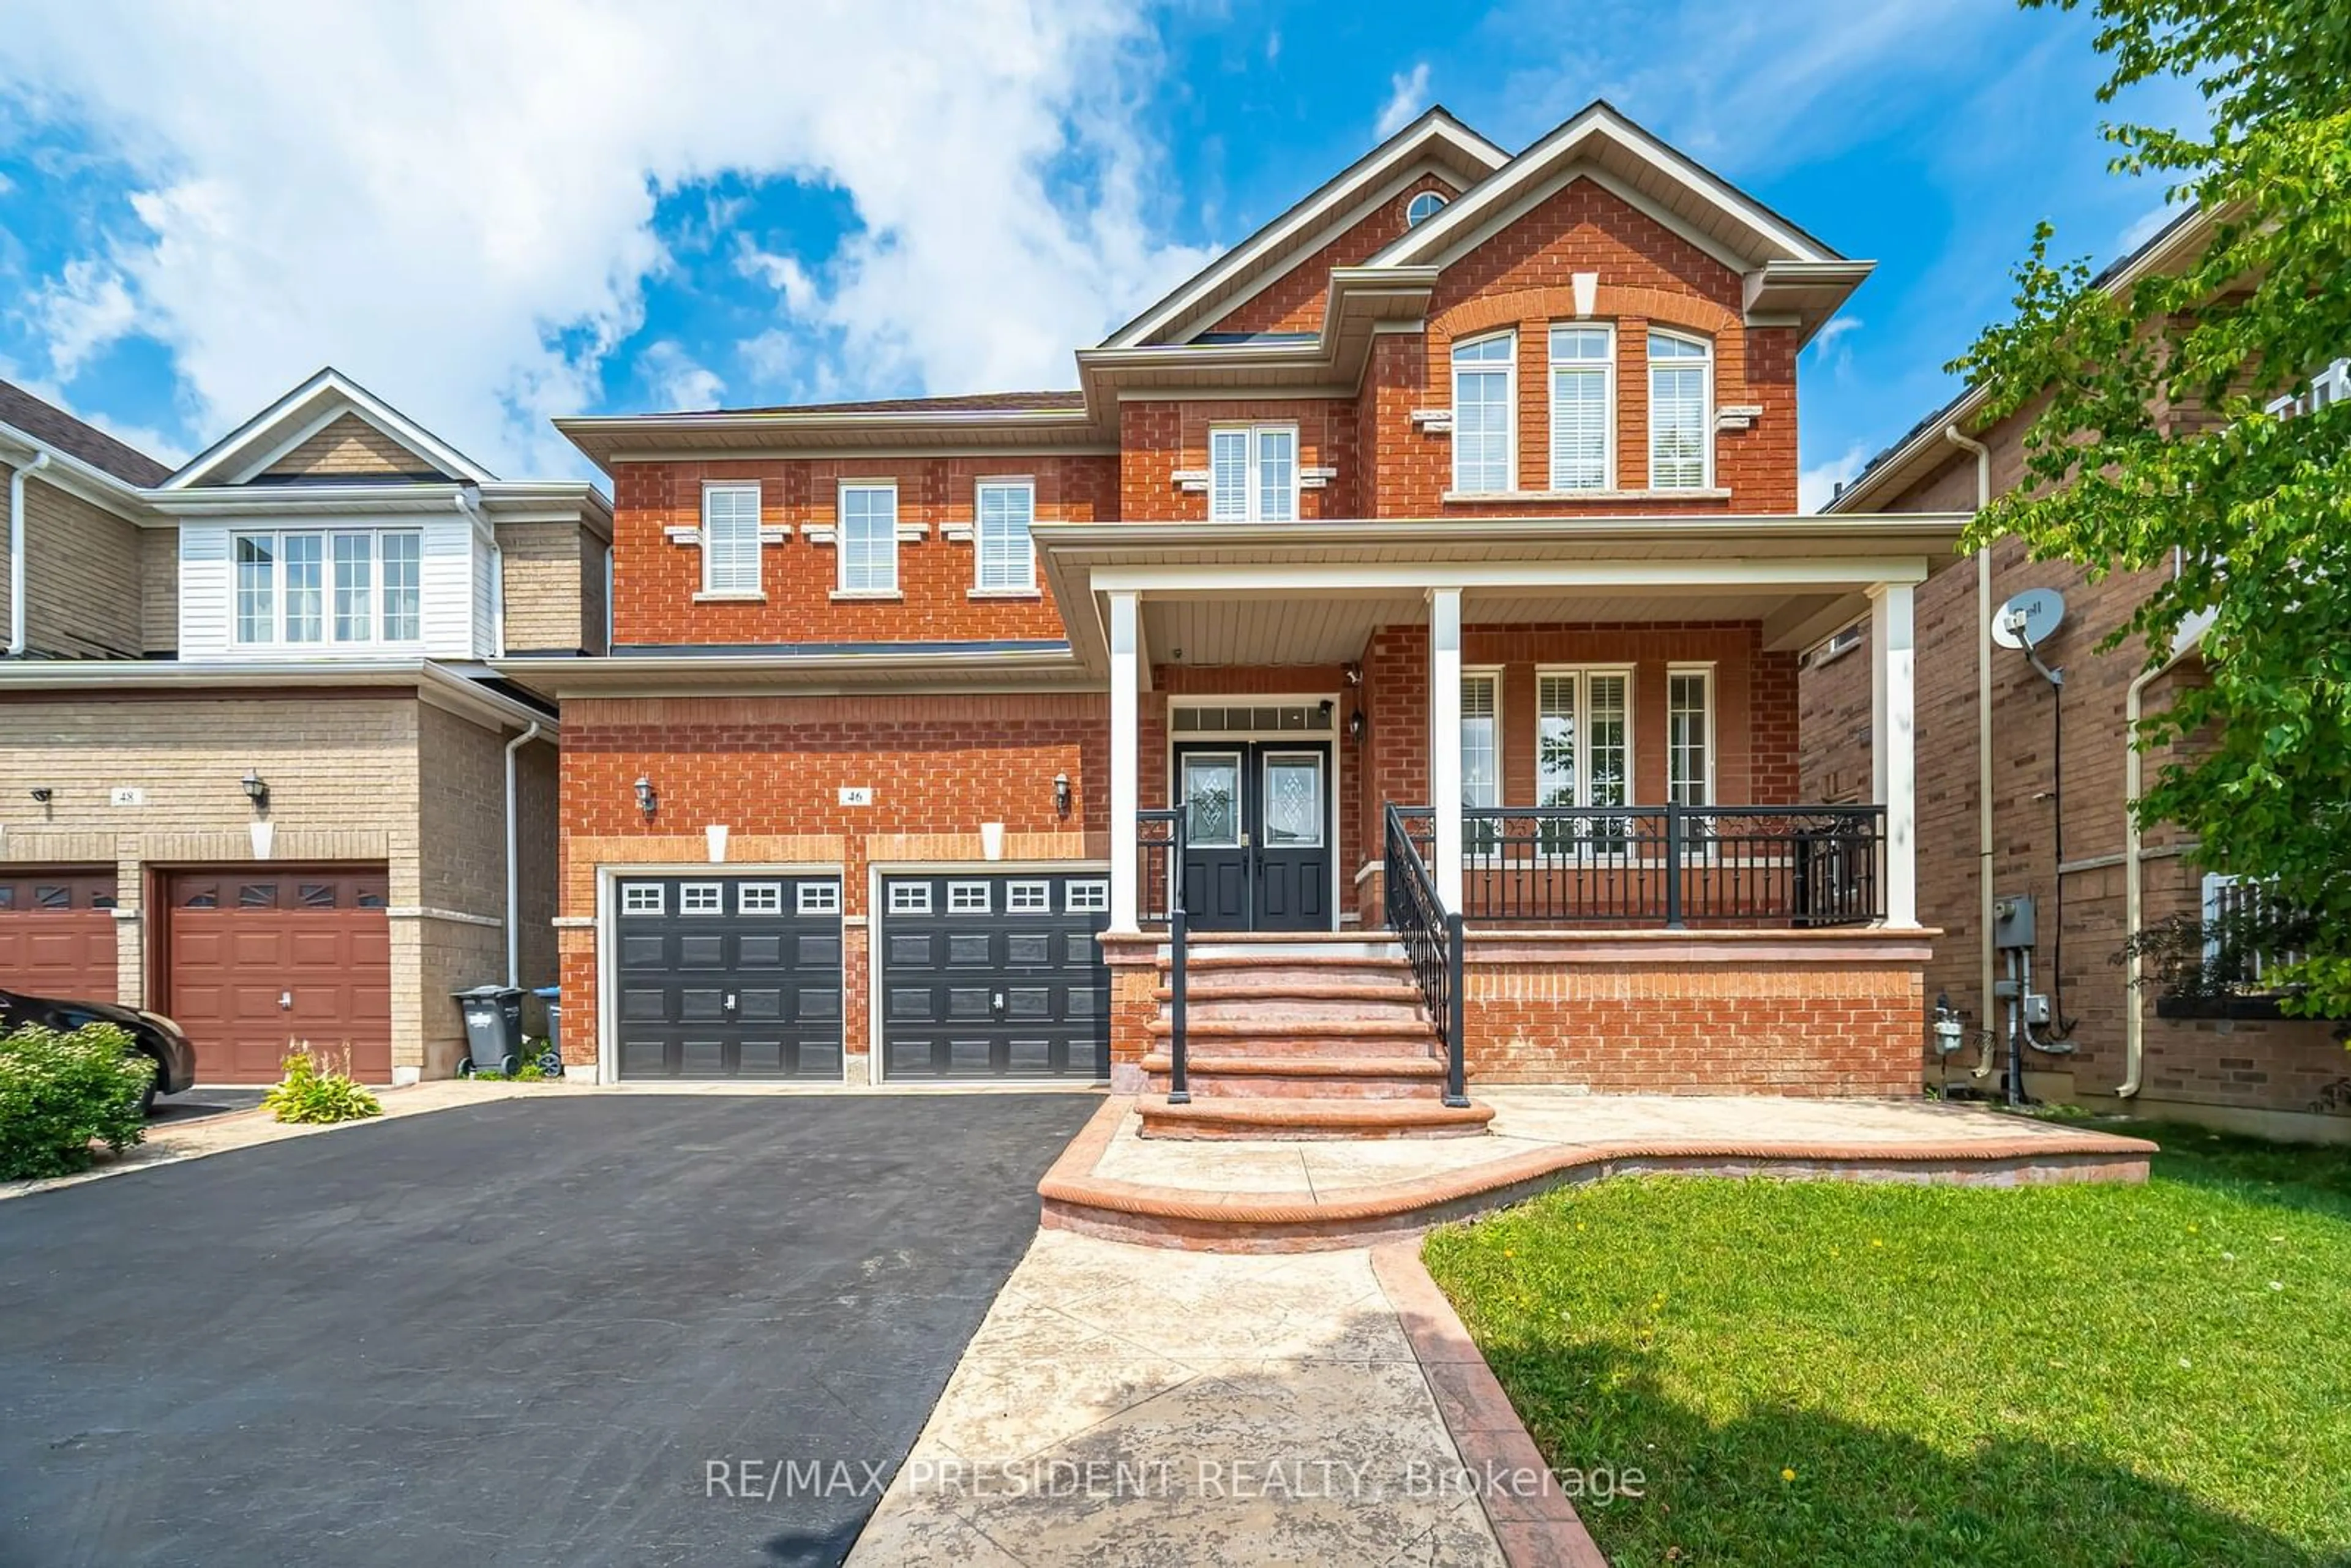 Home with brick exterior material for 46 Maverick Cres, Brampton Ontario L6R 3E6